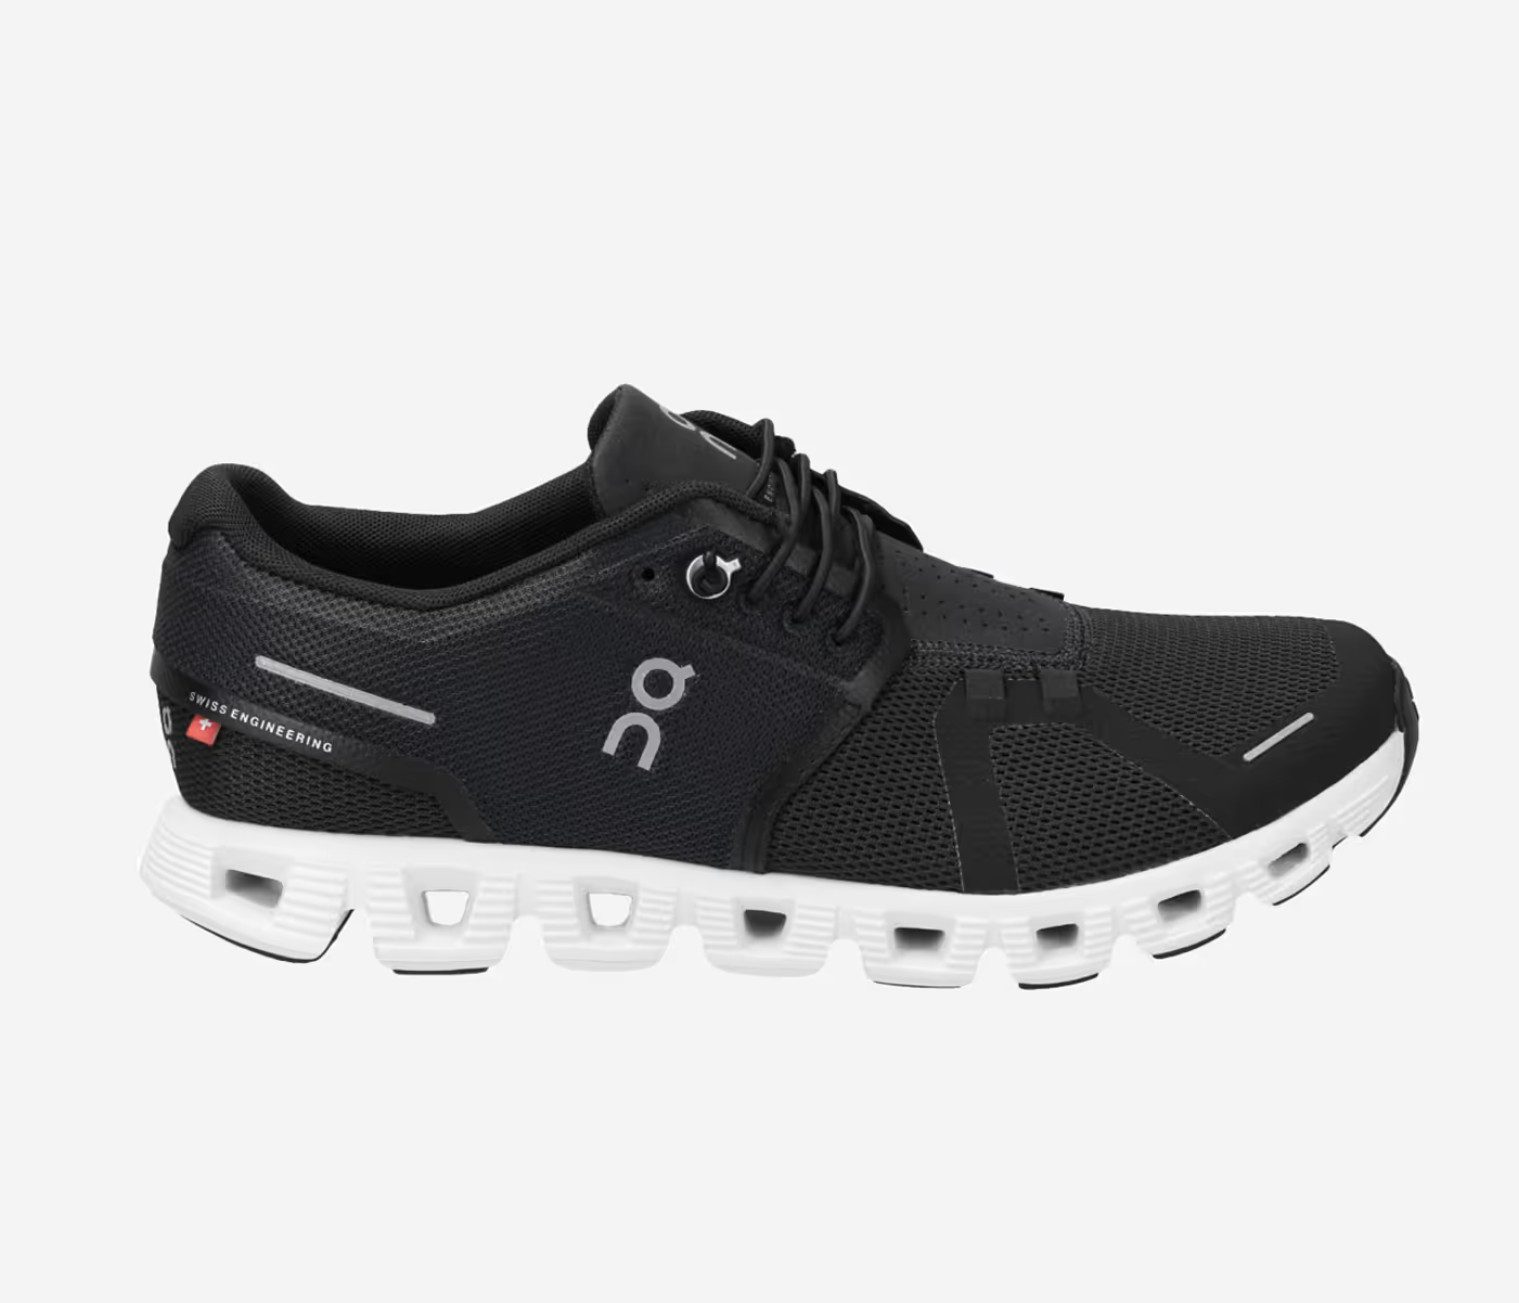 on Running Cloud 5 Black White Herren Lauf Schuhe Sneaker innovative Dämpfungstechnologie